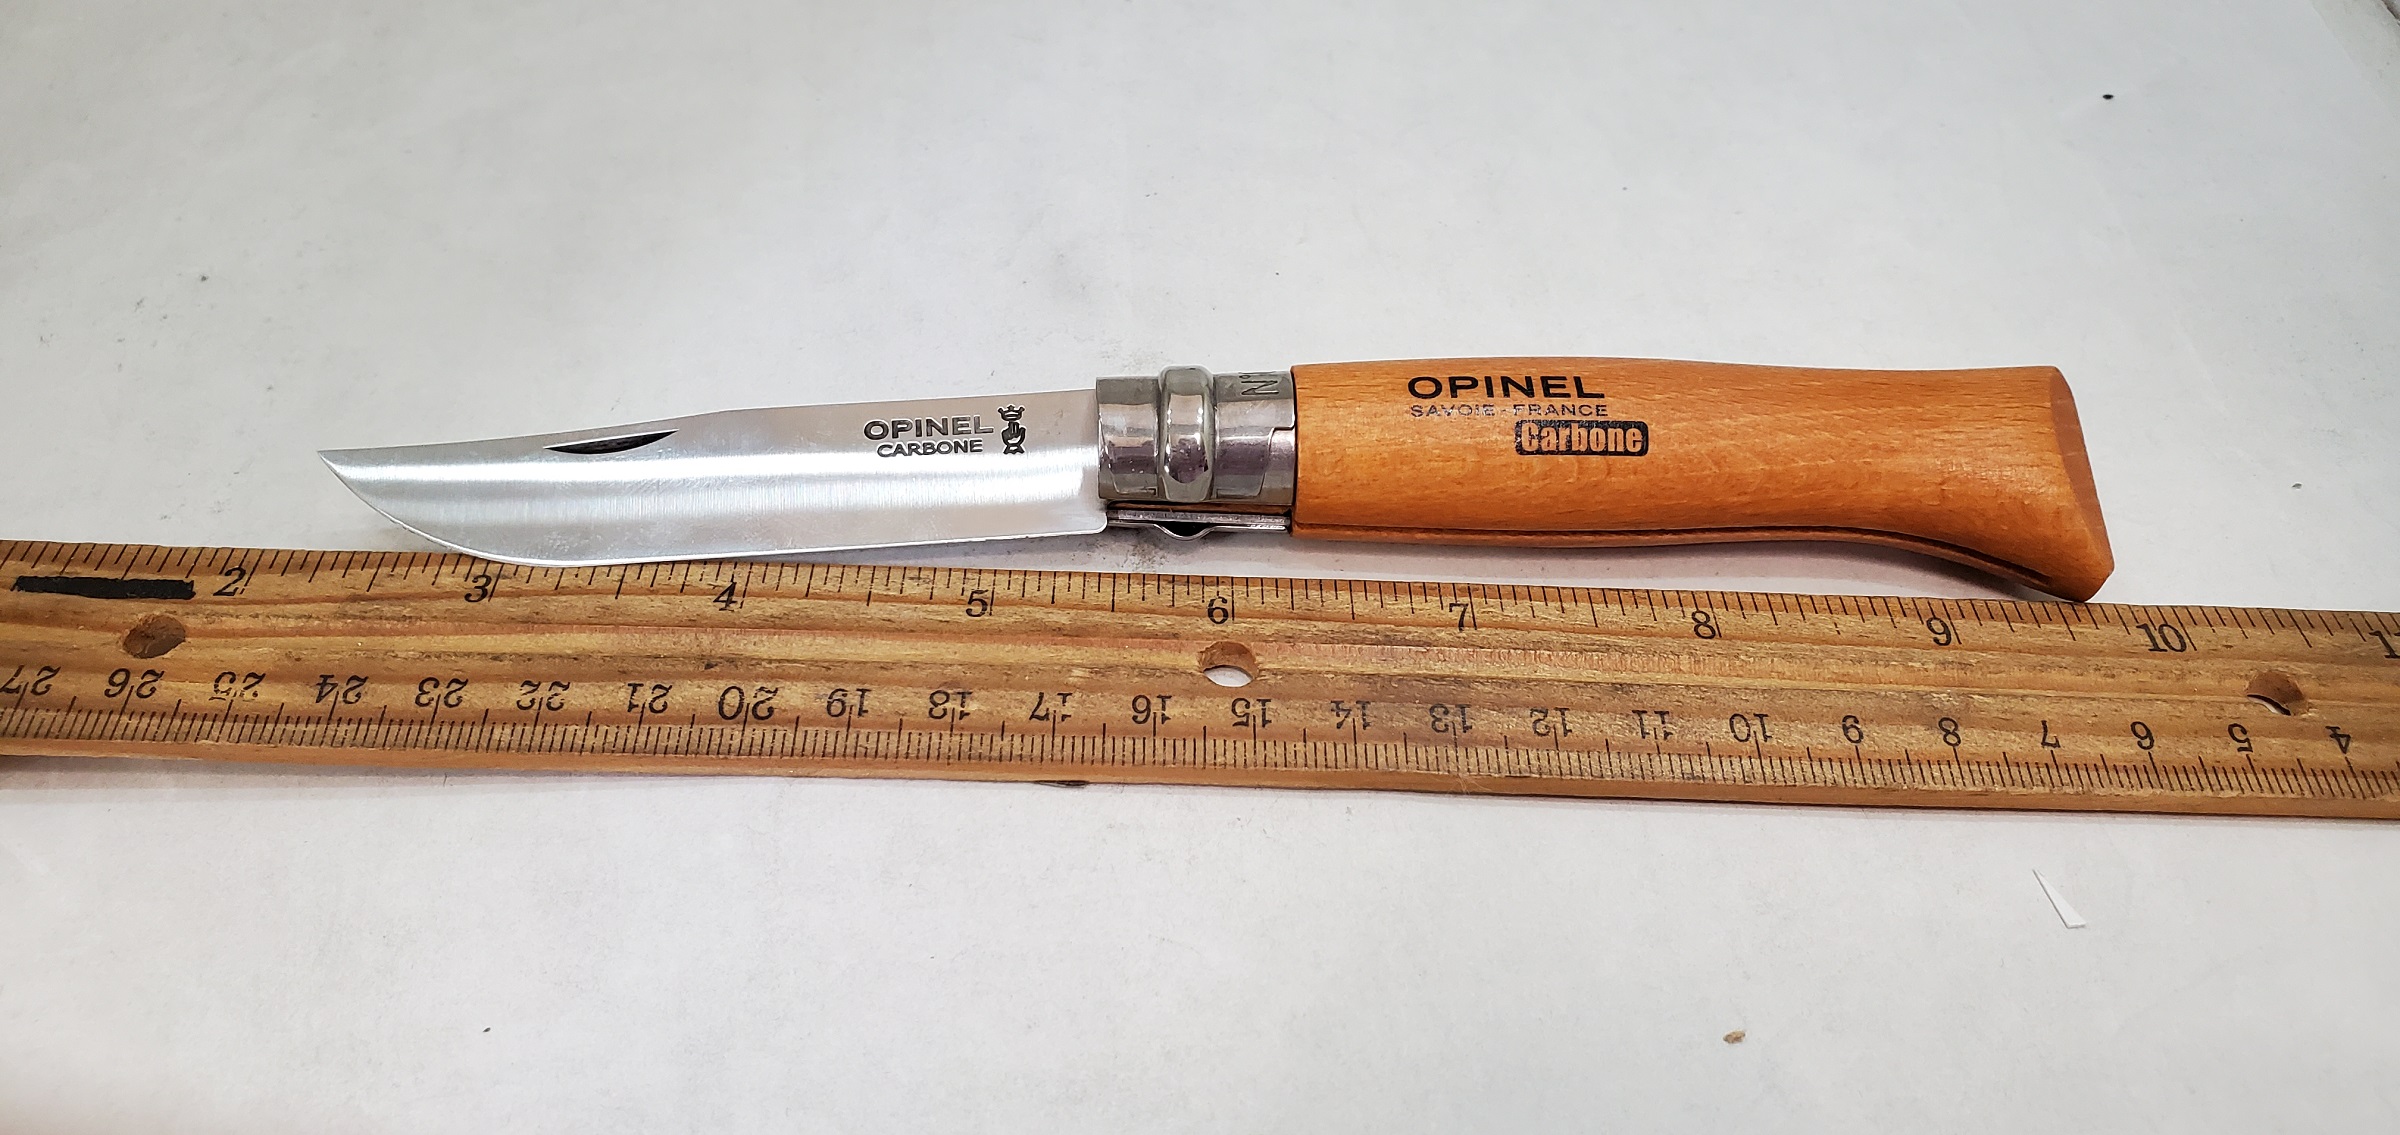 svælg luft trække No. 8 Opinel Carbon Knife Knife OP-13080 4-3/8" classic folding knife